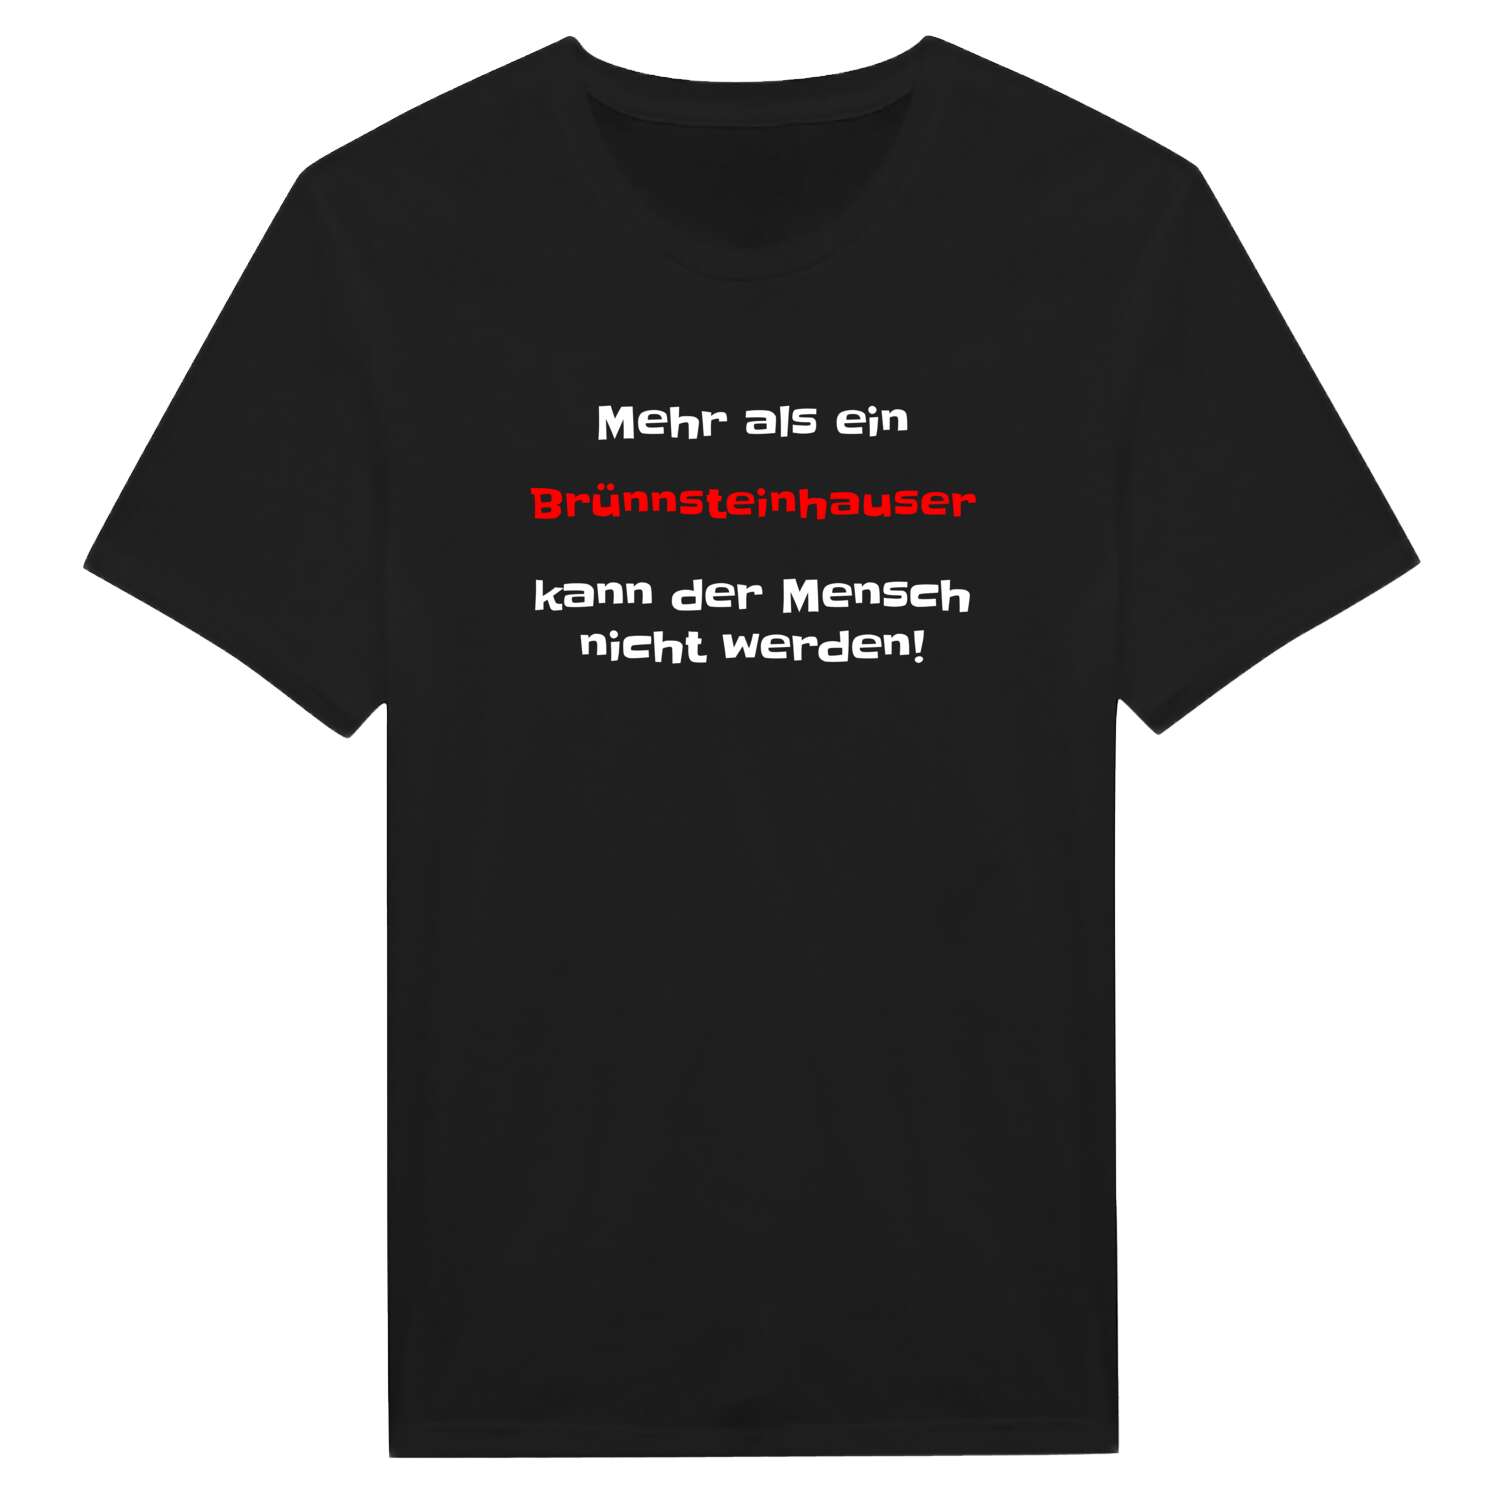 Brünnsteinhaus T-Shirt »Mehr als ein«